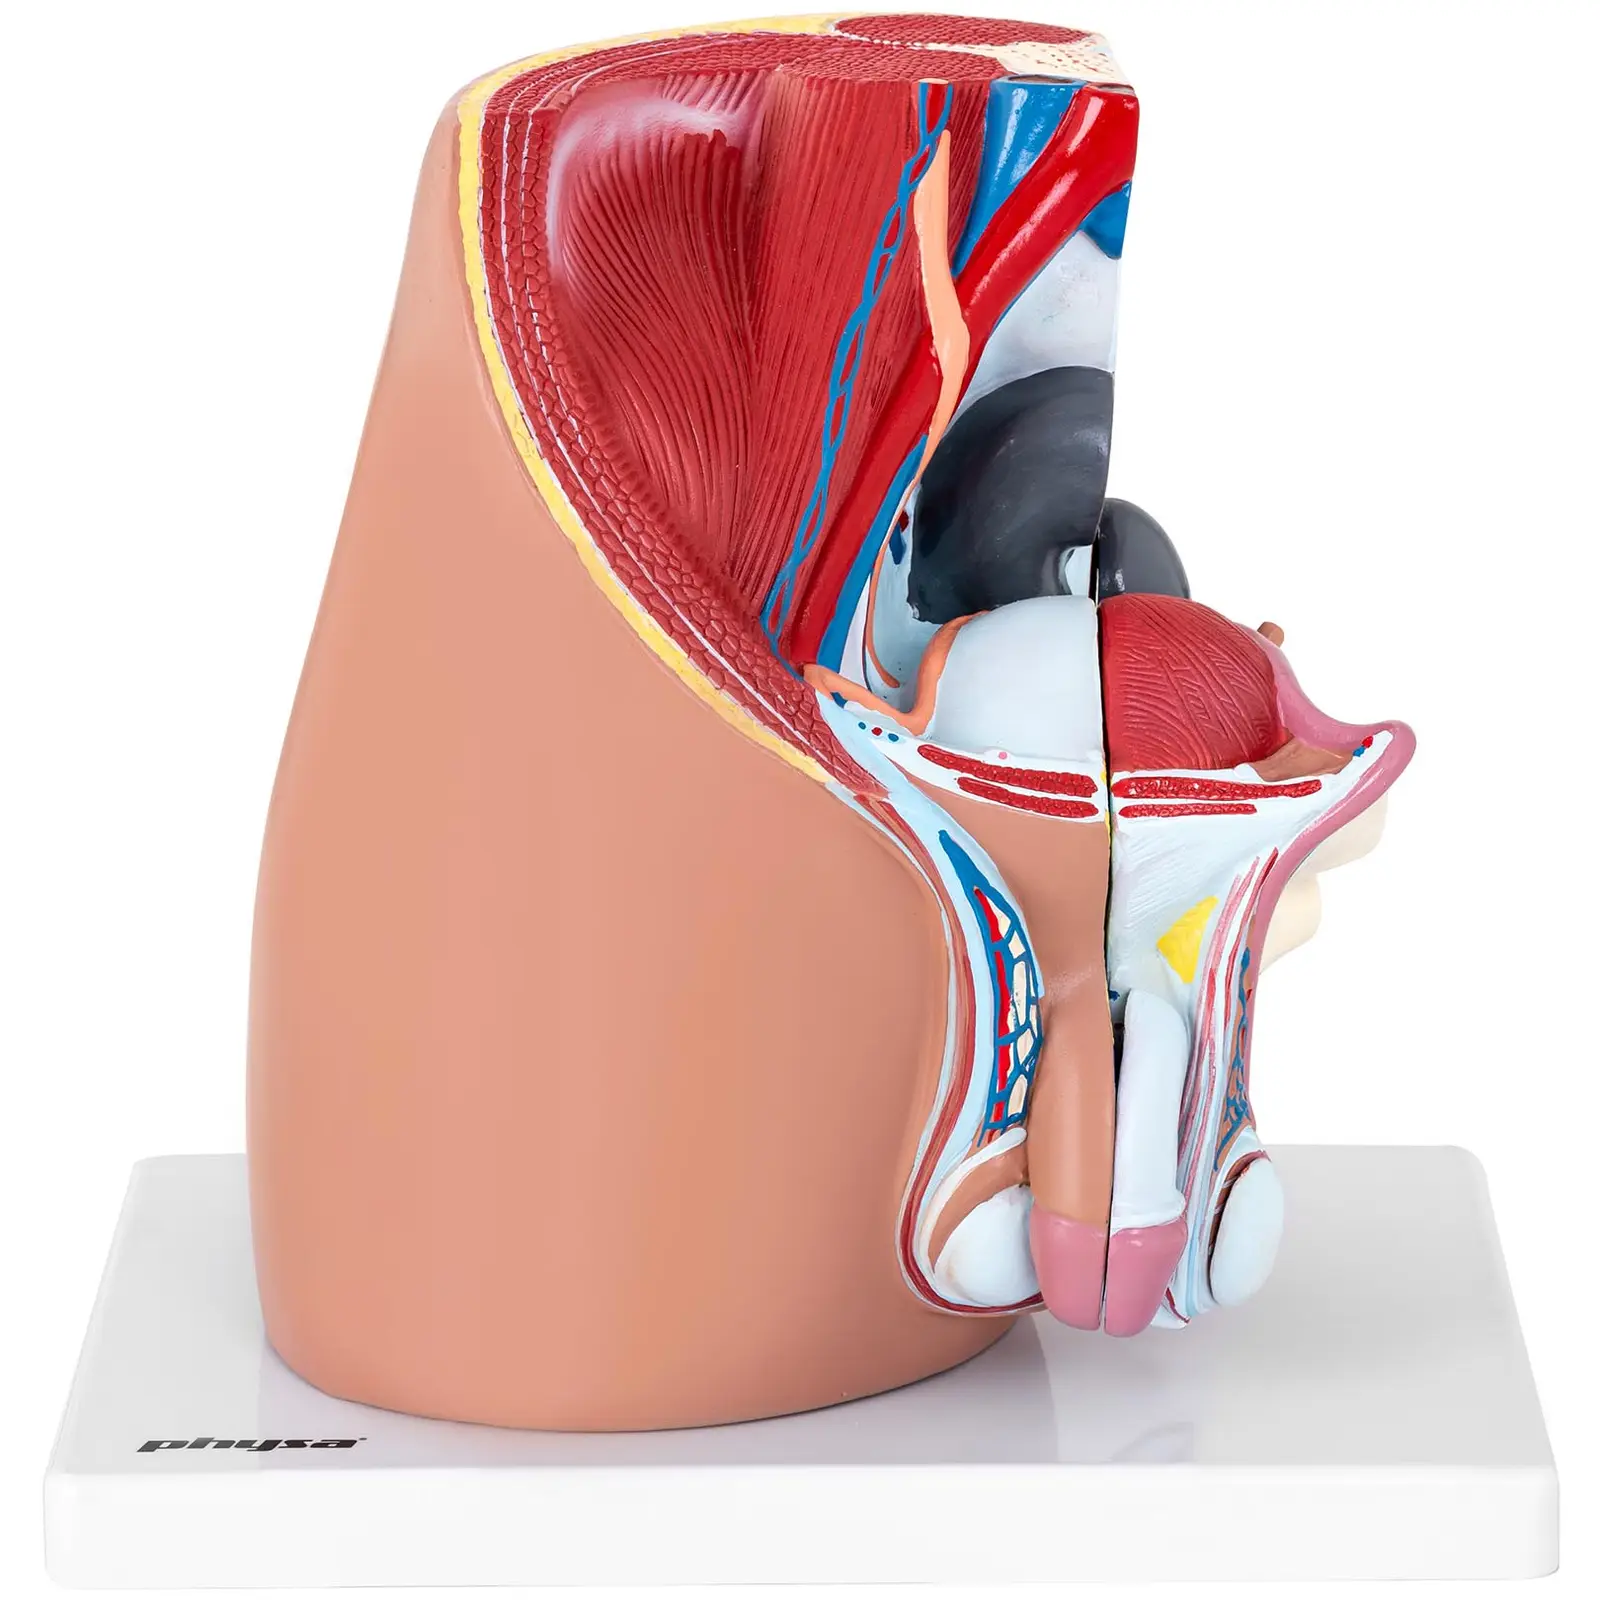 Anatominen malli - lantio - mies - jakautuu 4 osaan - luonnollinen koko